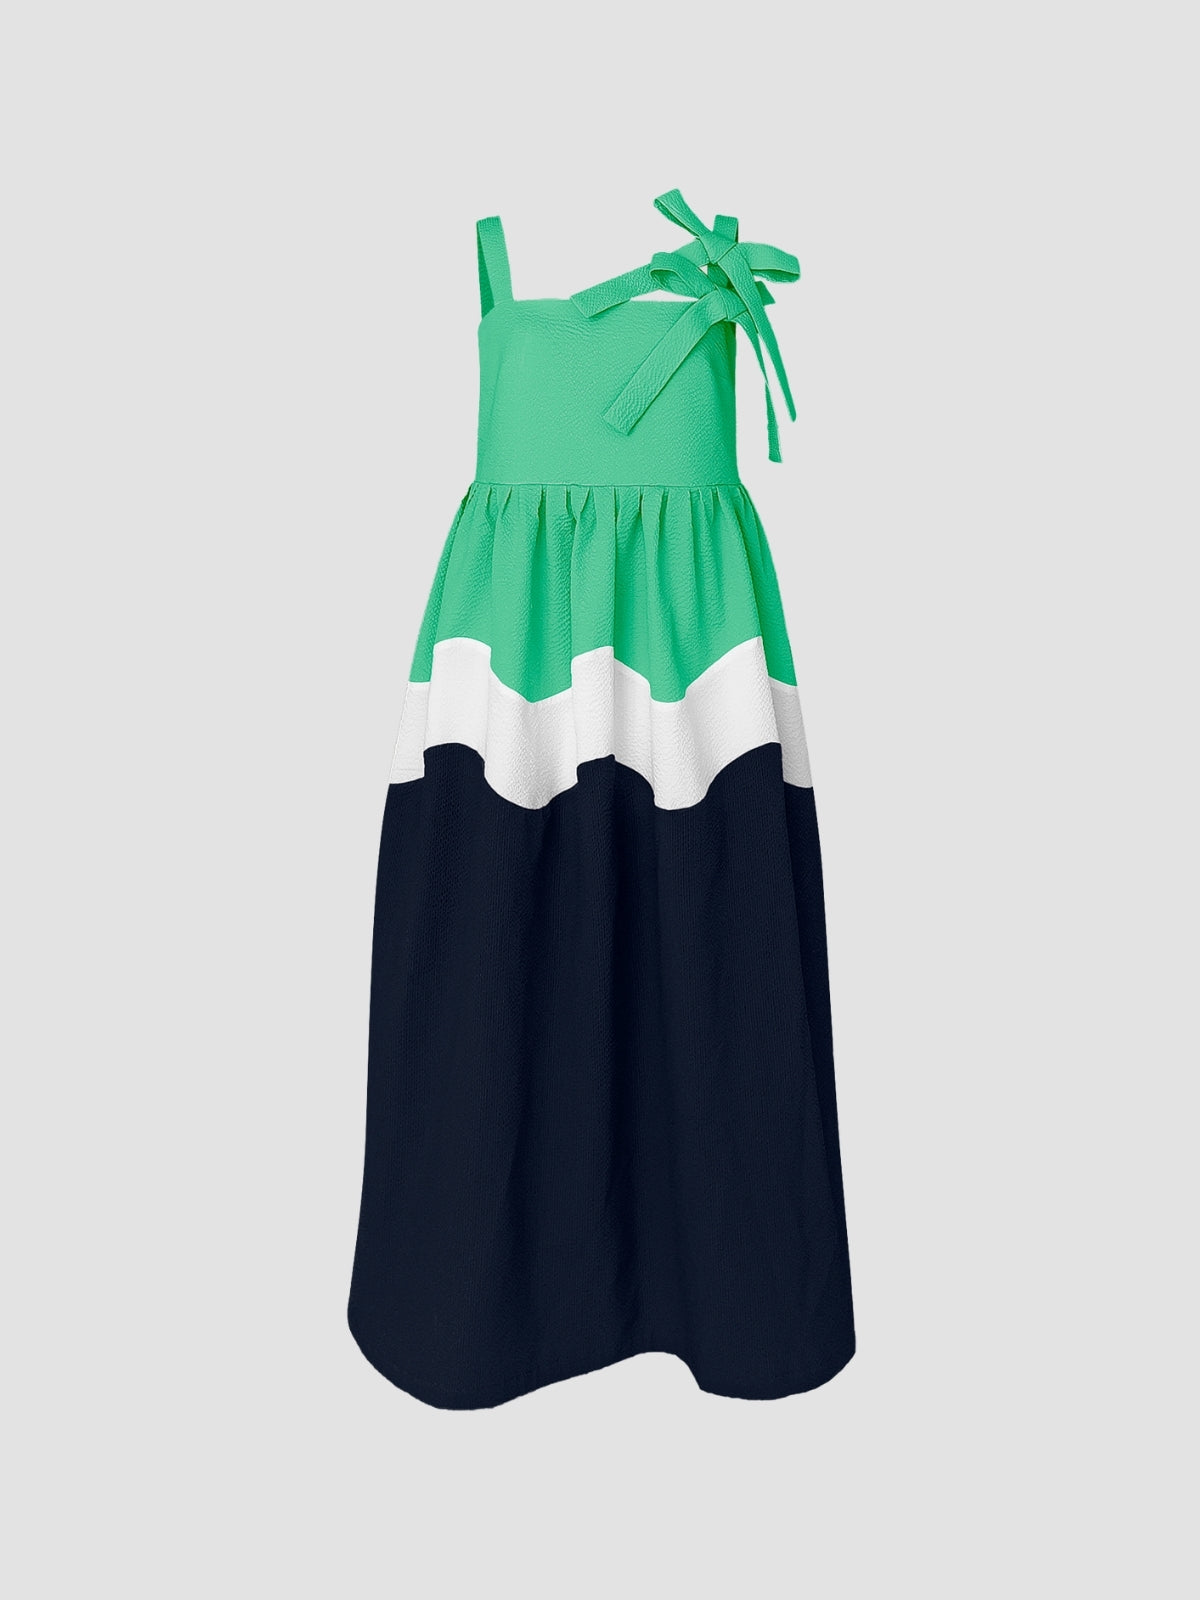 Fern green-dark blue Riksha maxi dress